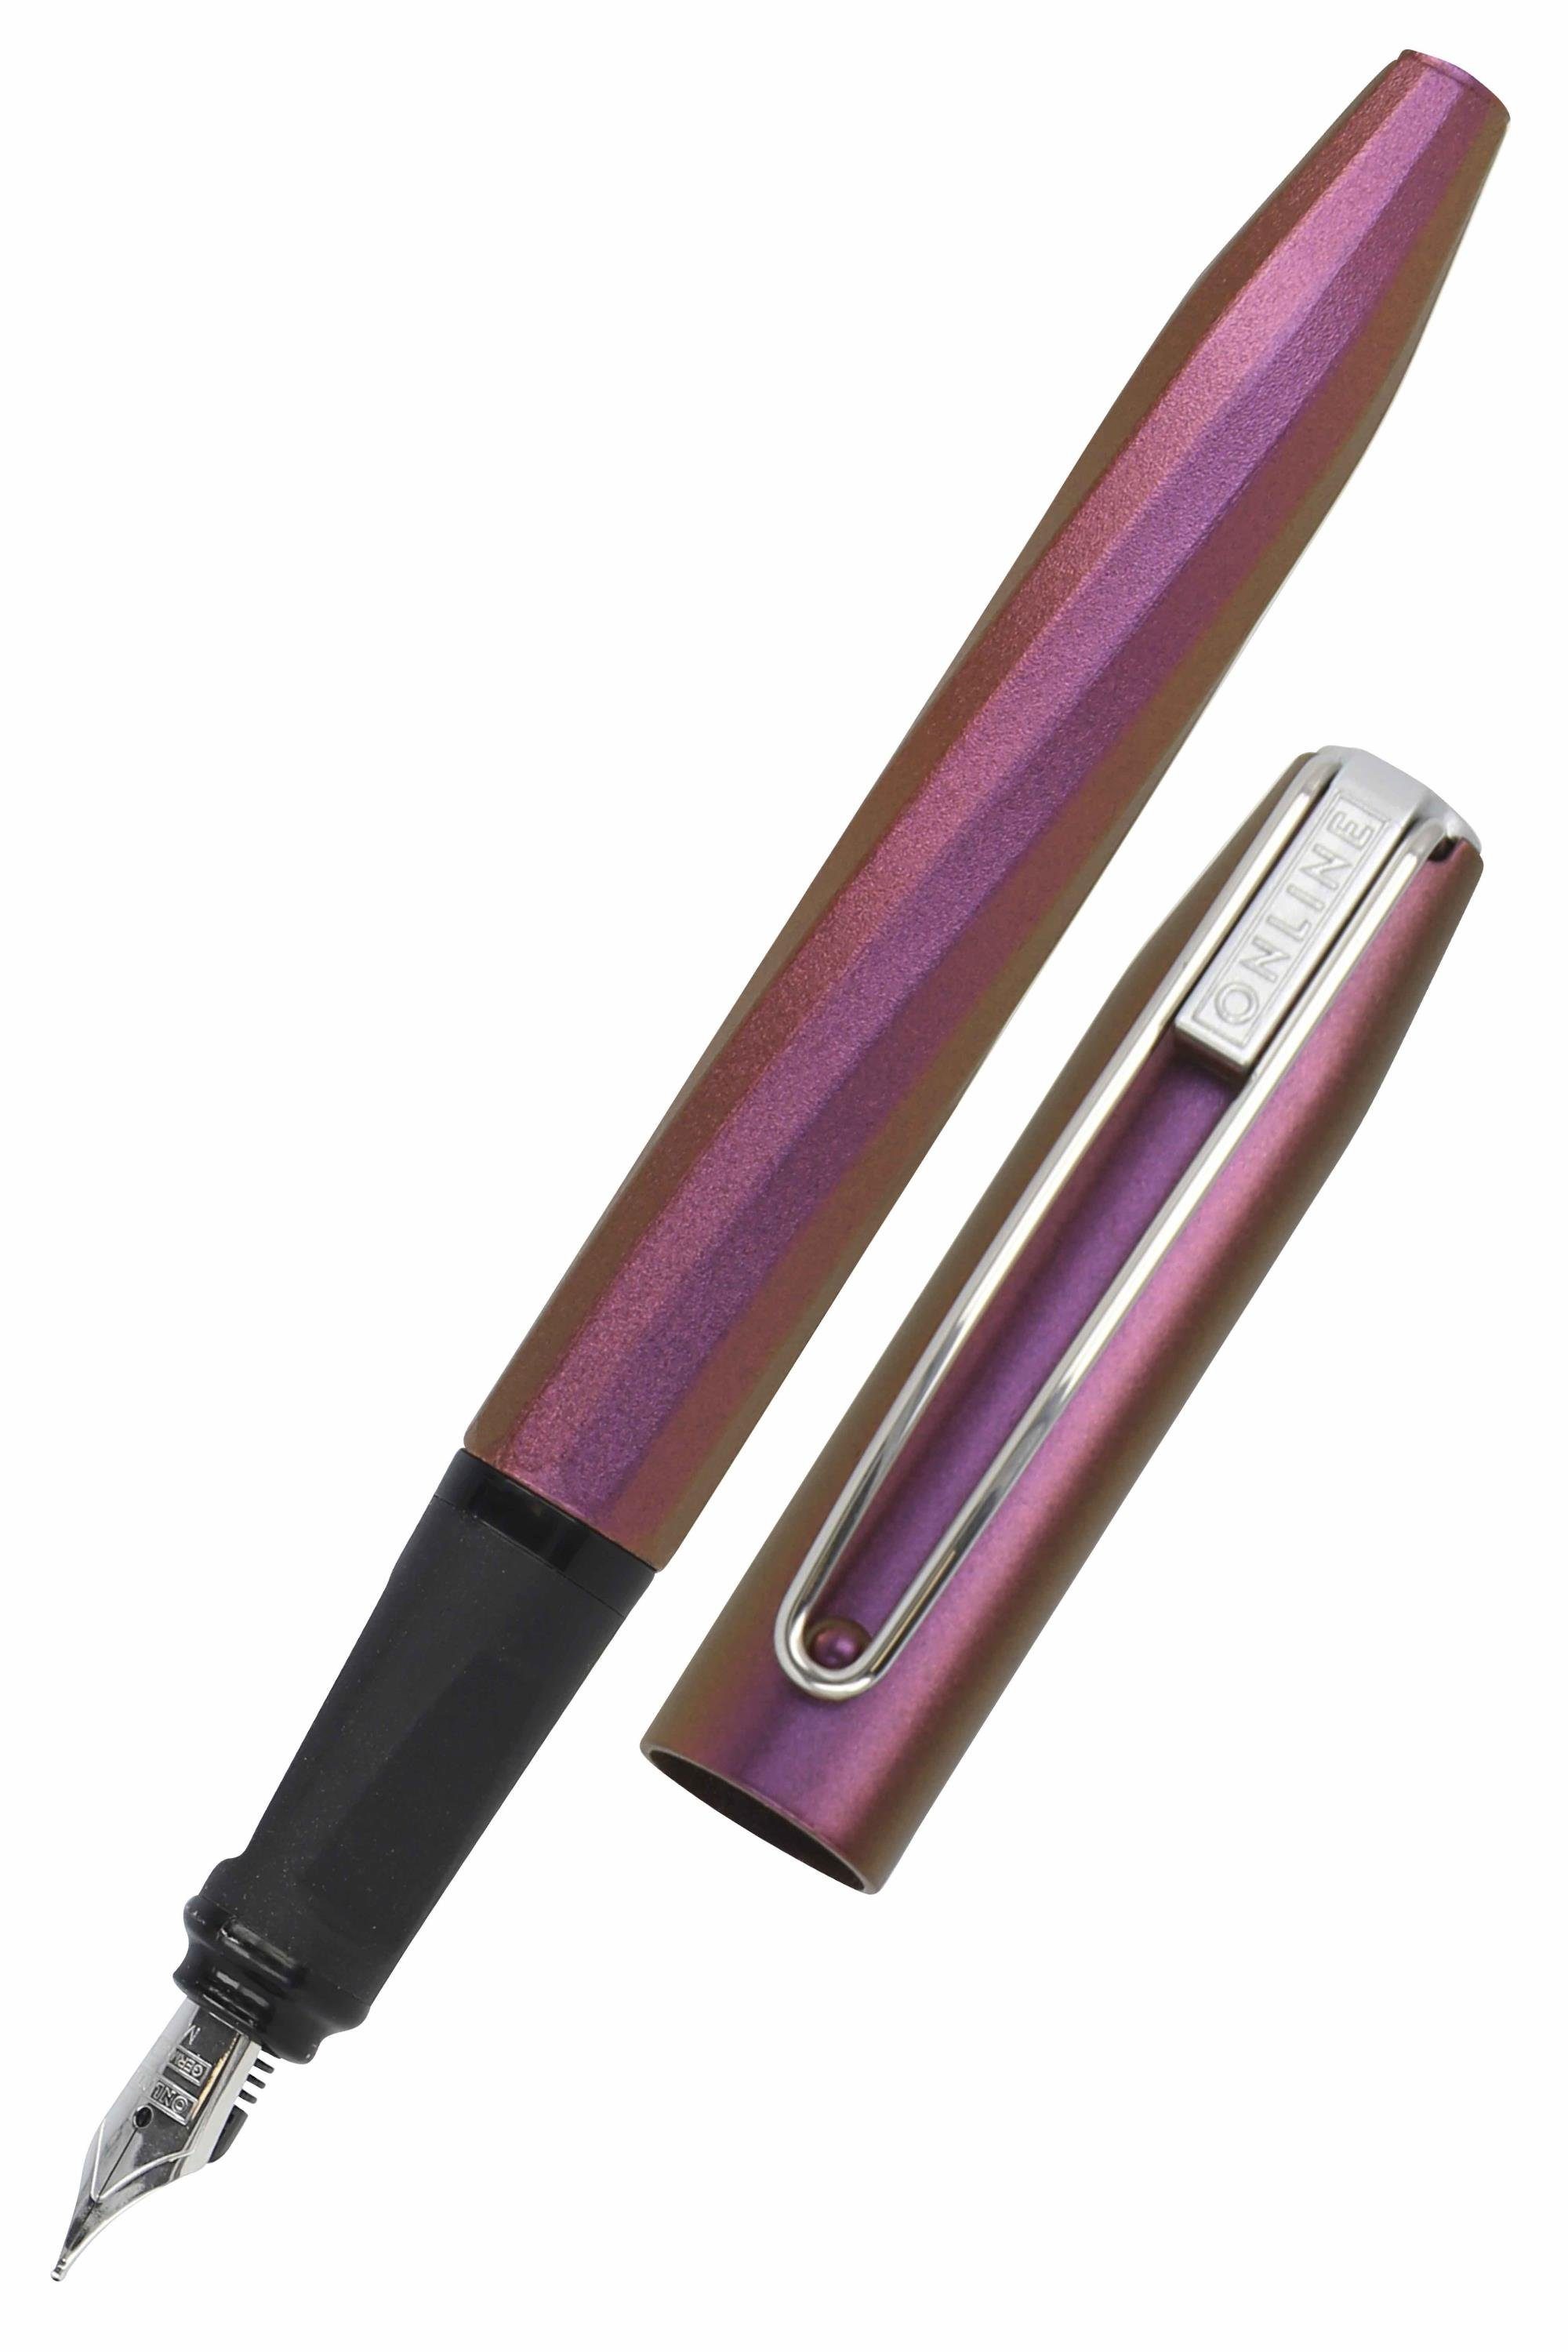 Online Pen Füller Slope, ergonomisch, ideal für die Schule, inkl. Tintenpatrone Pink